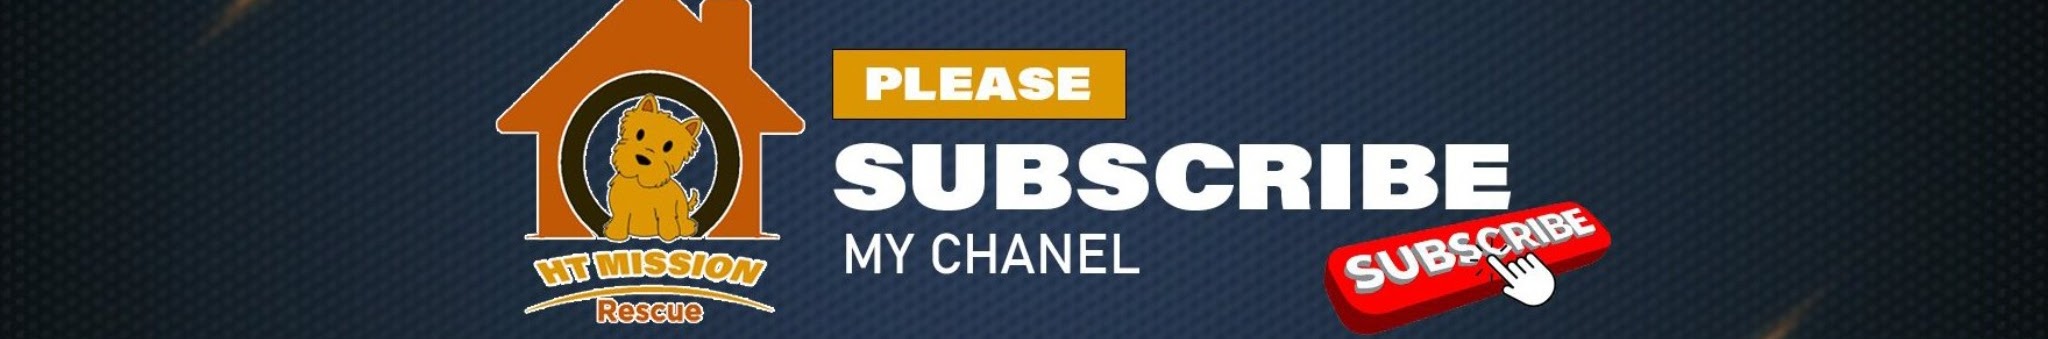 Channel banner